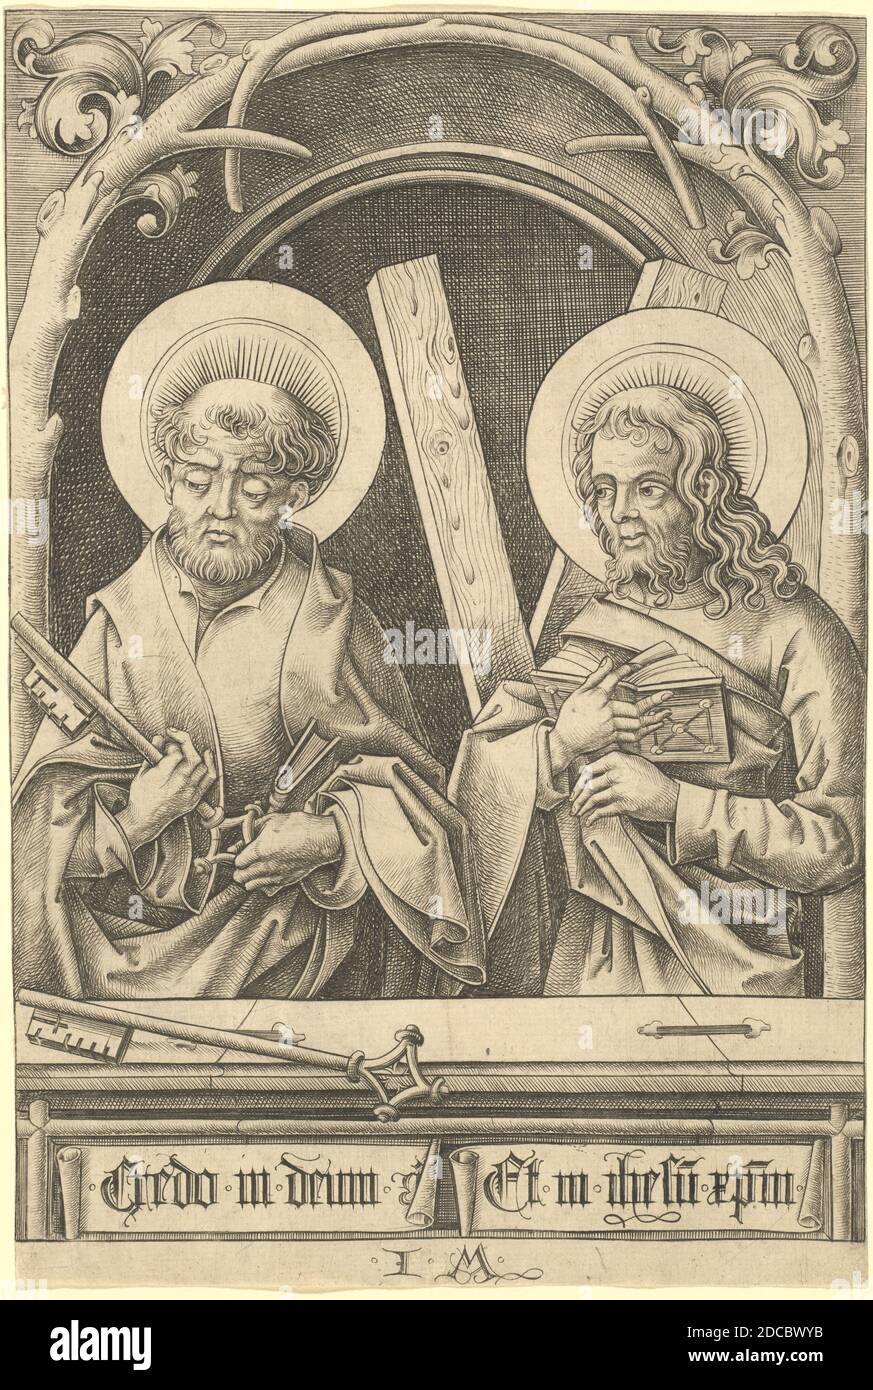 Israhel van Meckenem, (artist), German, c. 1445 - 1503, Saints Peter and Andrew, The Twelve Apostles in Six Sheets, (series), c. 1480/1485, engraving Stock Photo